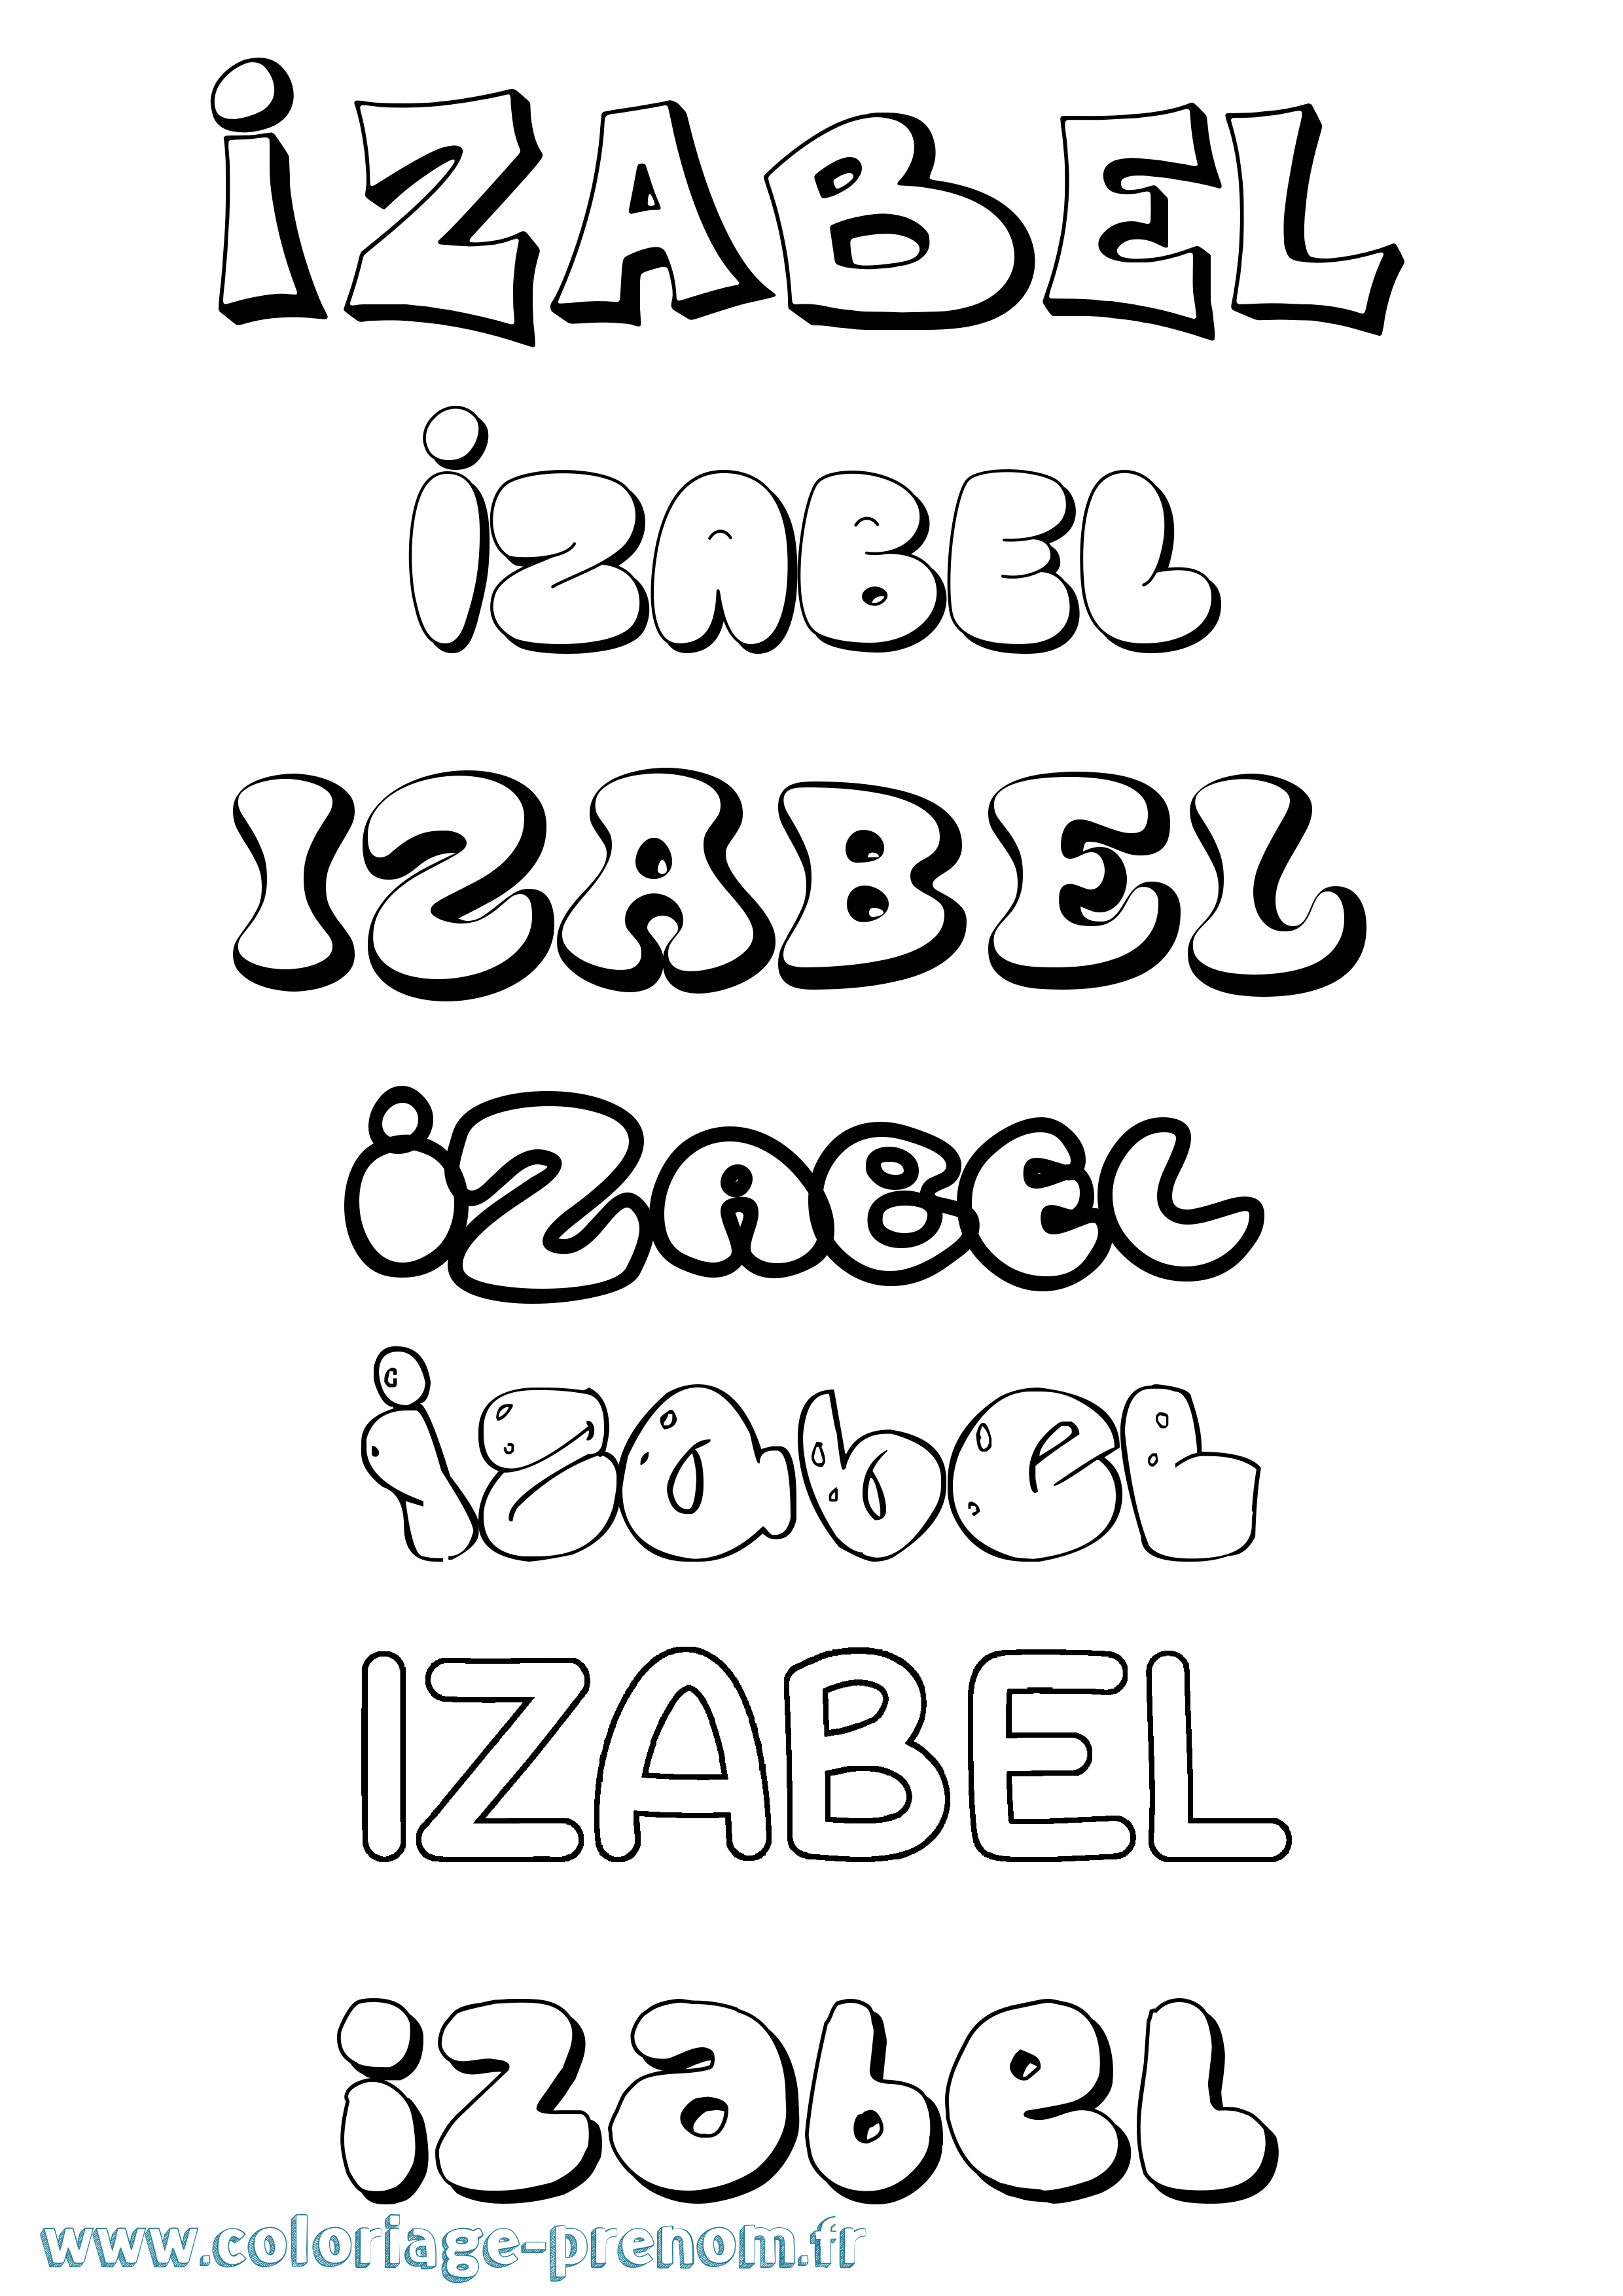 Coloriage prénom Izabel Bubble